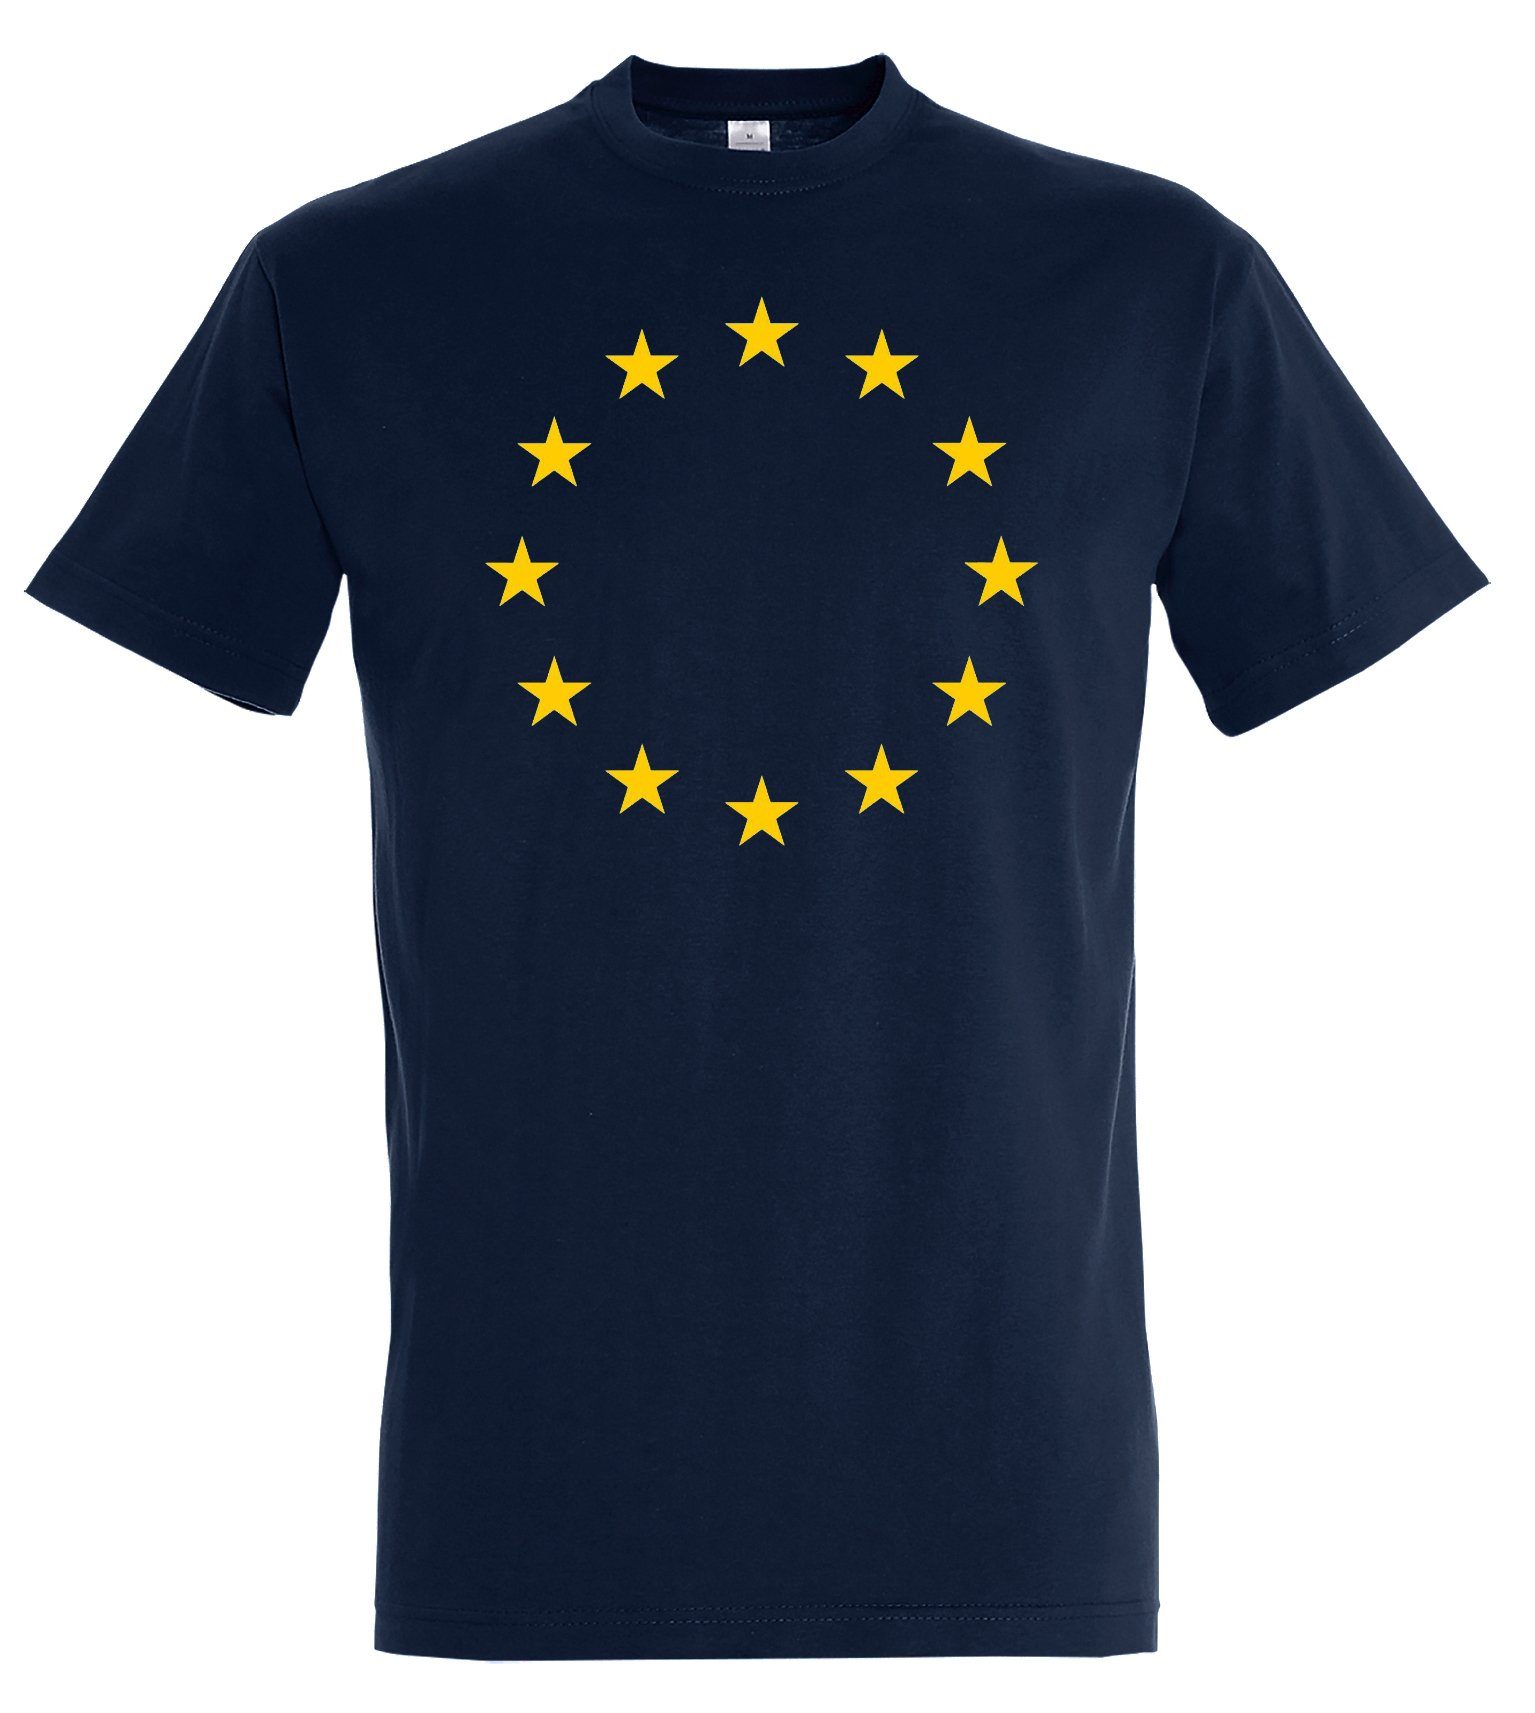 T-Shirt Navyblau Herren Europa Aufdruck EU Sterne mit Designz Print-Shirt Flagge modischem EU Youth